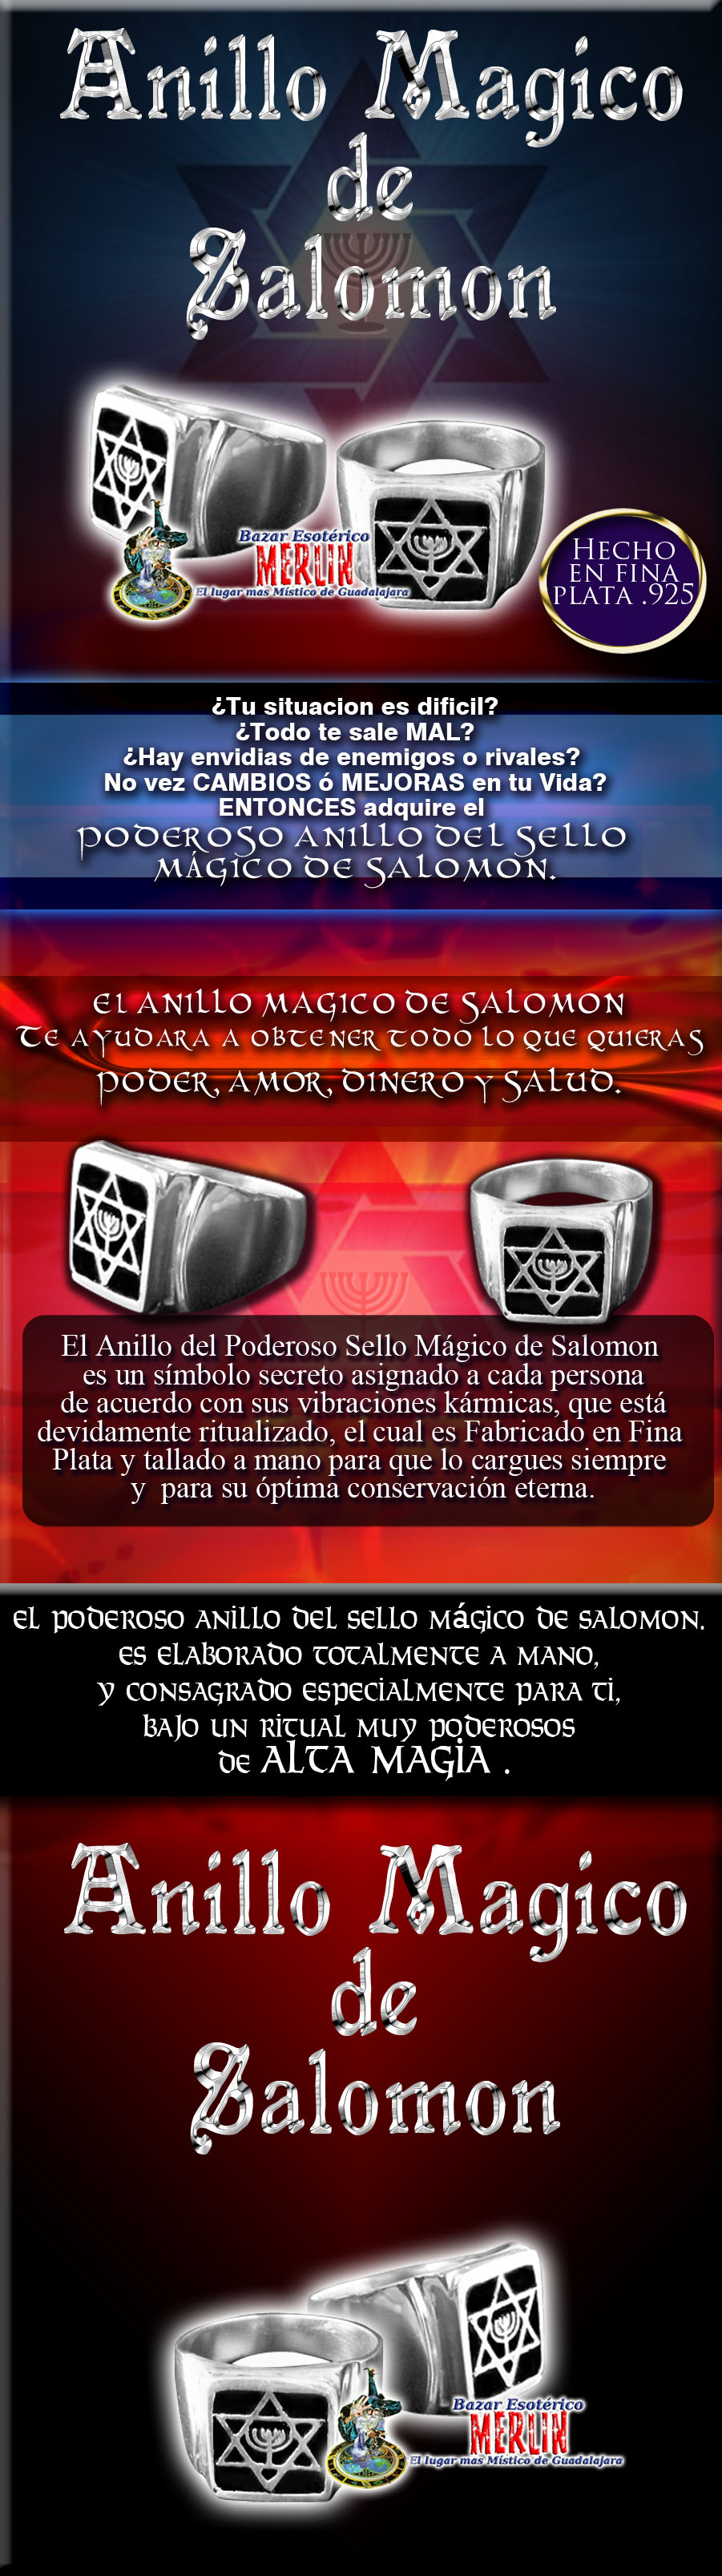 anillo_magico_salomon_diseno